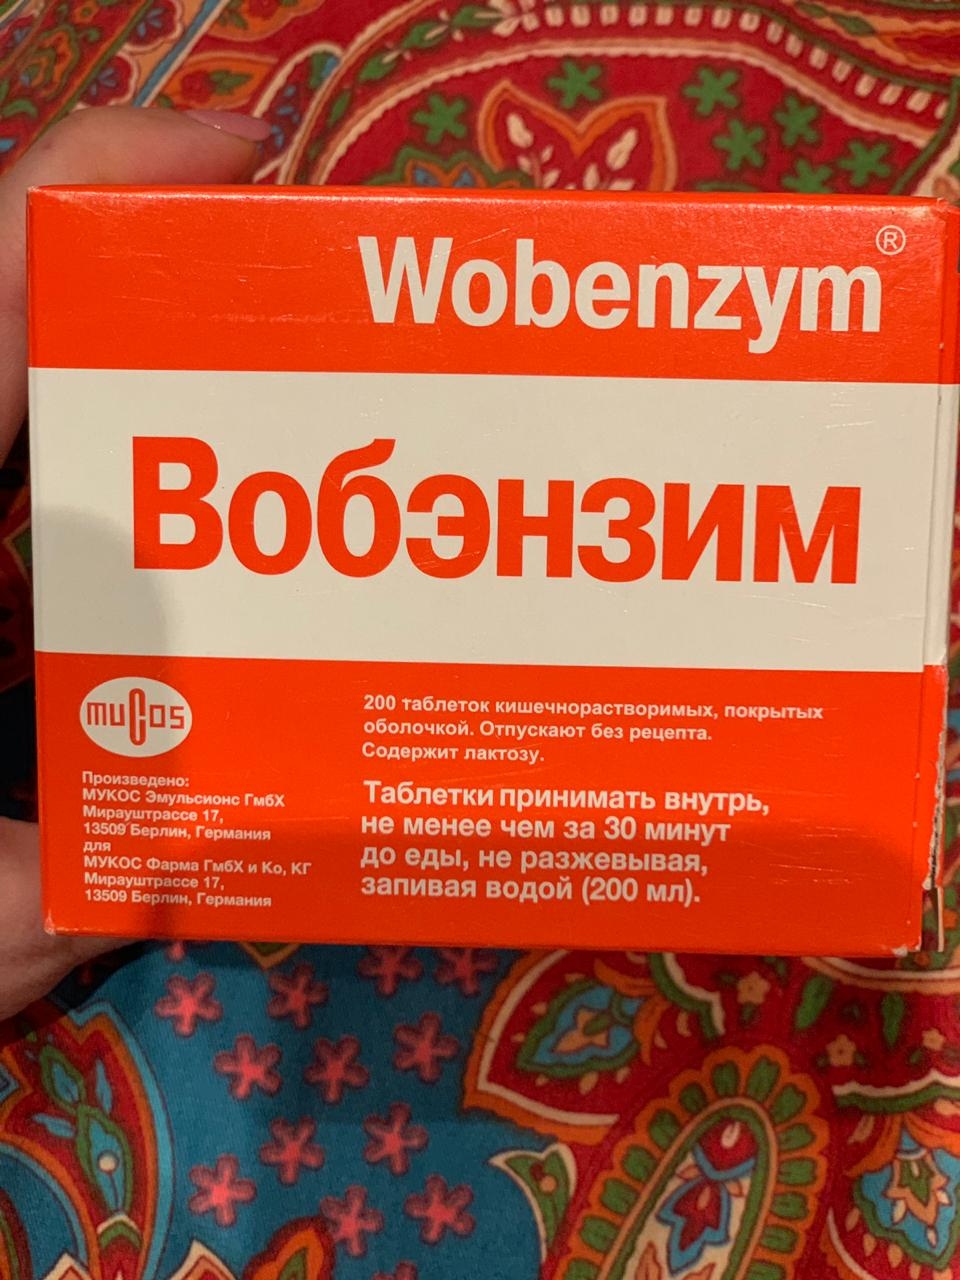 Wobenzym (Вобэнзим) - Лечение кольпита Вобэнзимом